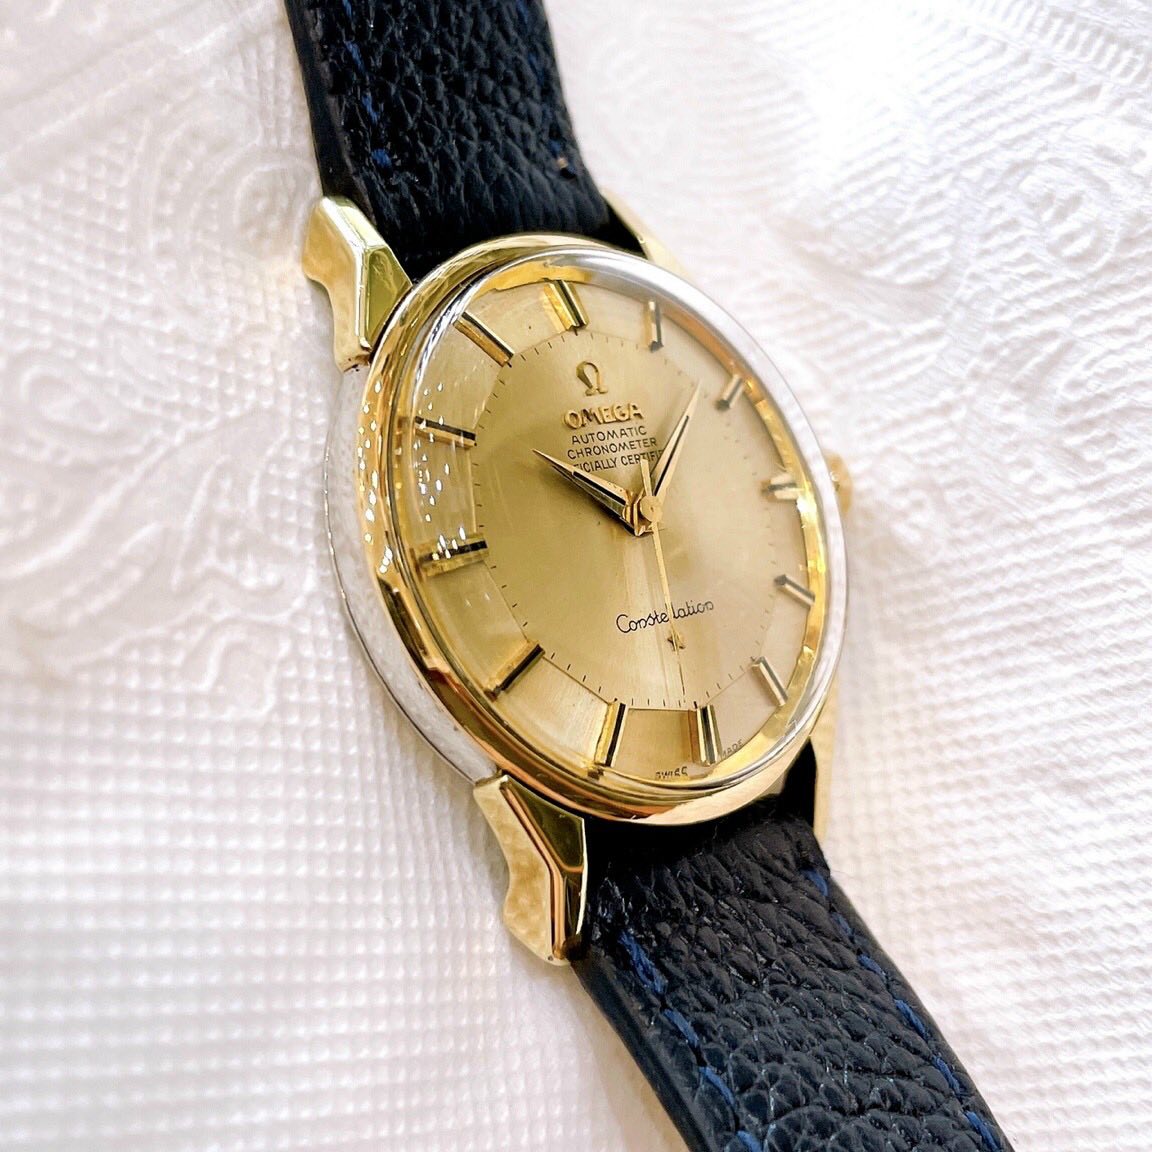 Đồng hồ cổ Omega Automatic Bát Quái demi chính hãng Thụy Sĩ